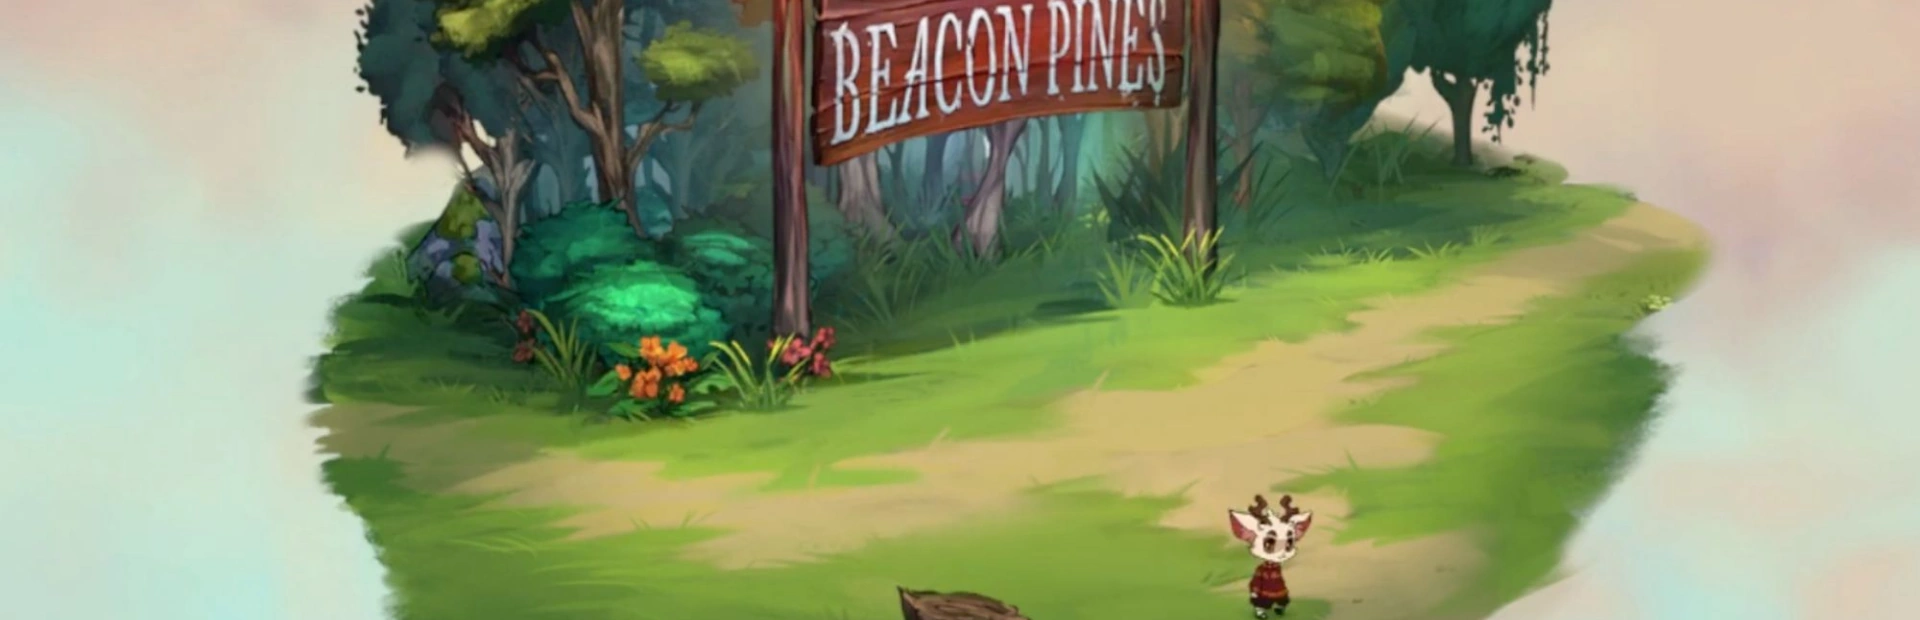 دانلود بازی Beacon Pines برای کامپیوتر | گیمباتو